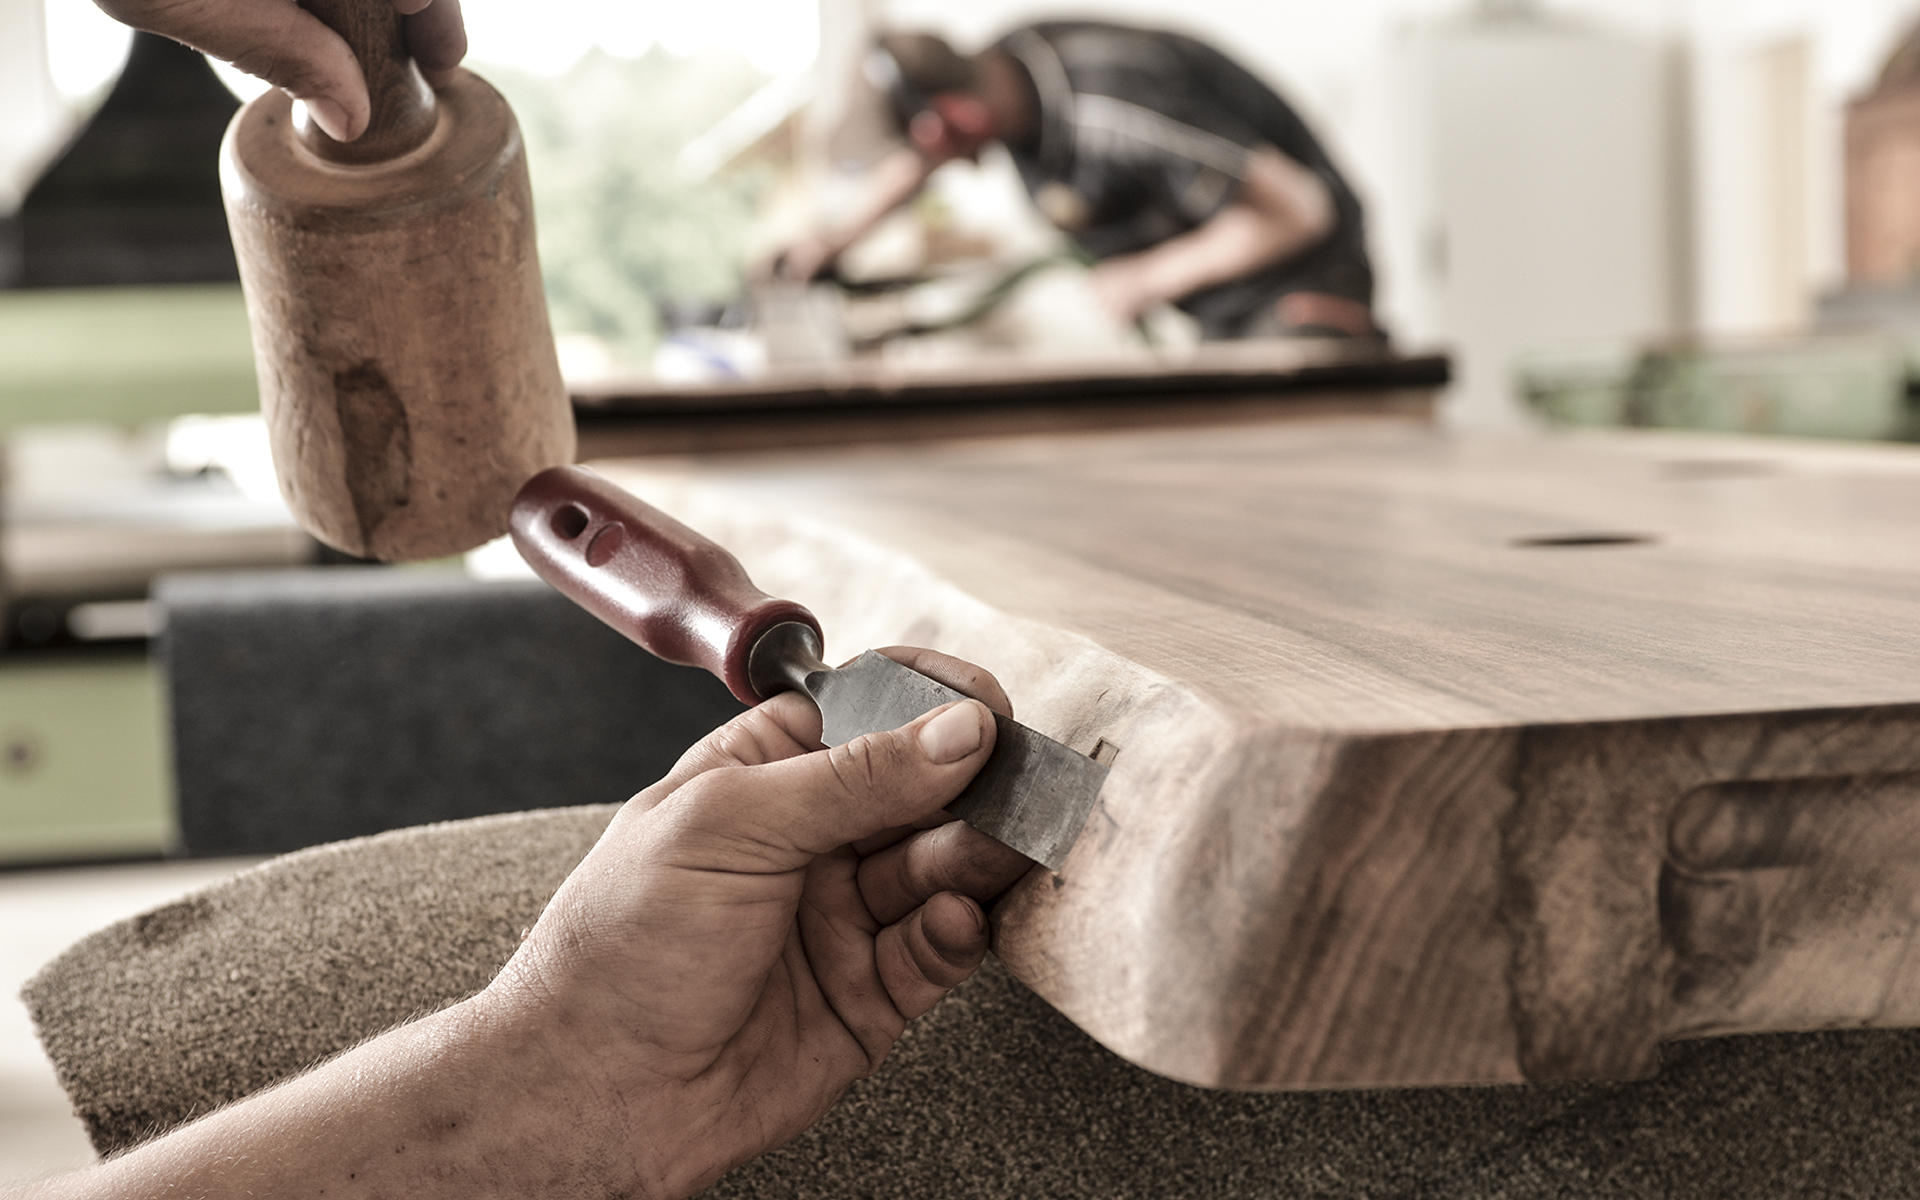 Mit viel Handarbeit, Expertise und Feingefühl entstehen bei Stammdesign einzigartige Produkte aus Holz